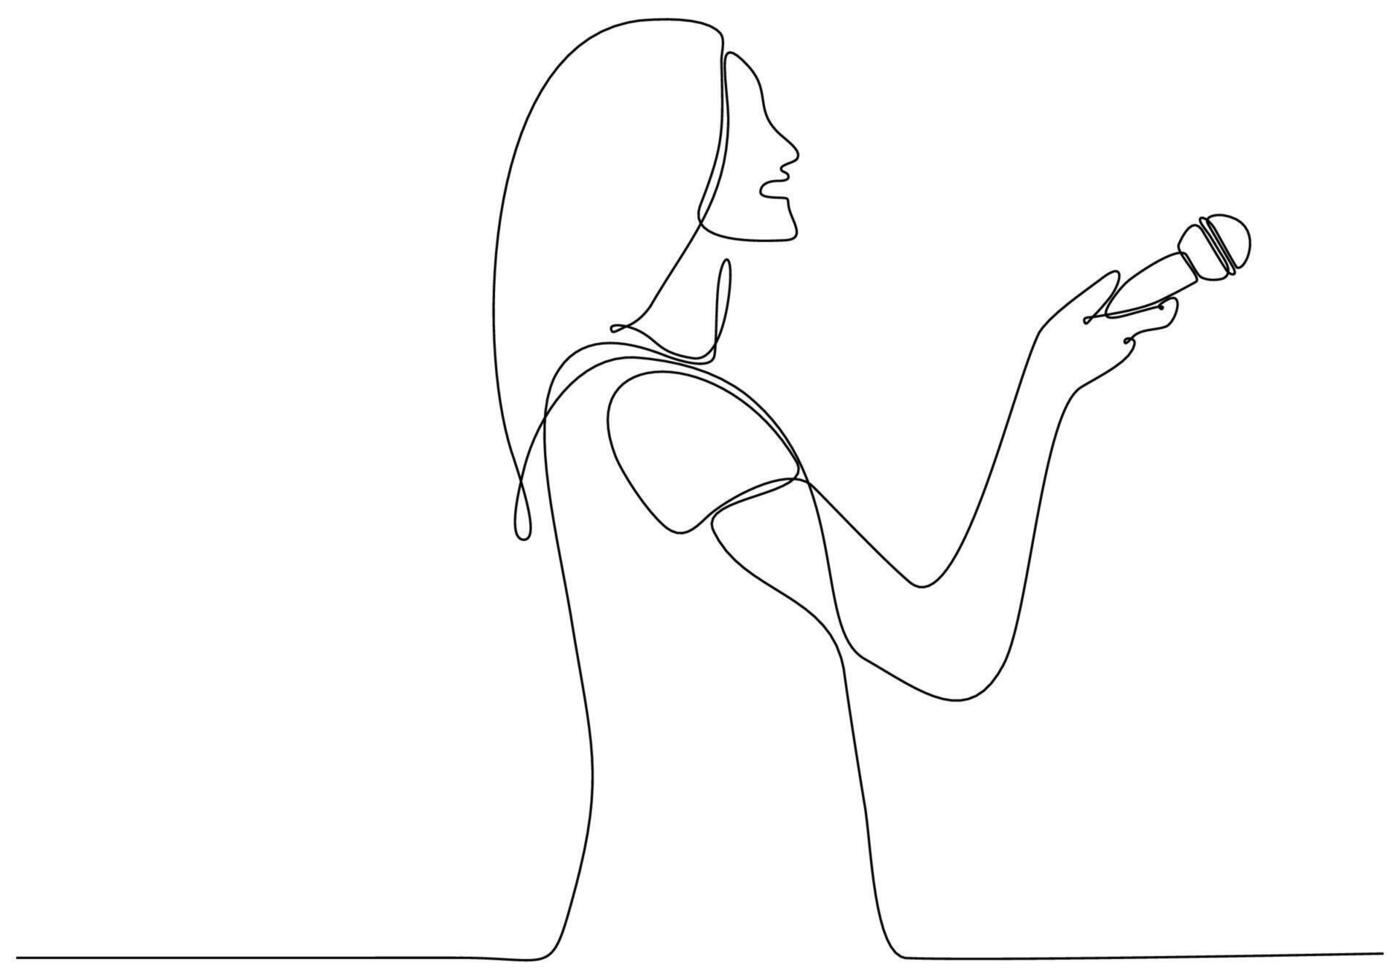 continue lijntekening van vrouw met microfoon, journalist symbool vectorillustratie vector